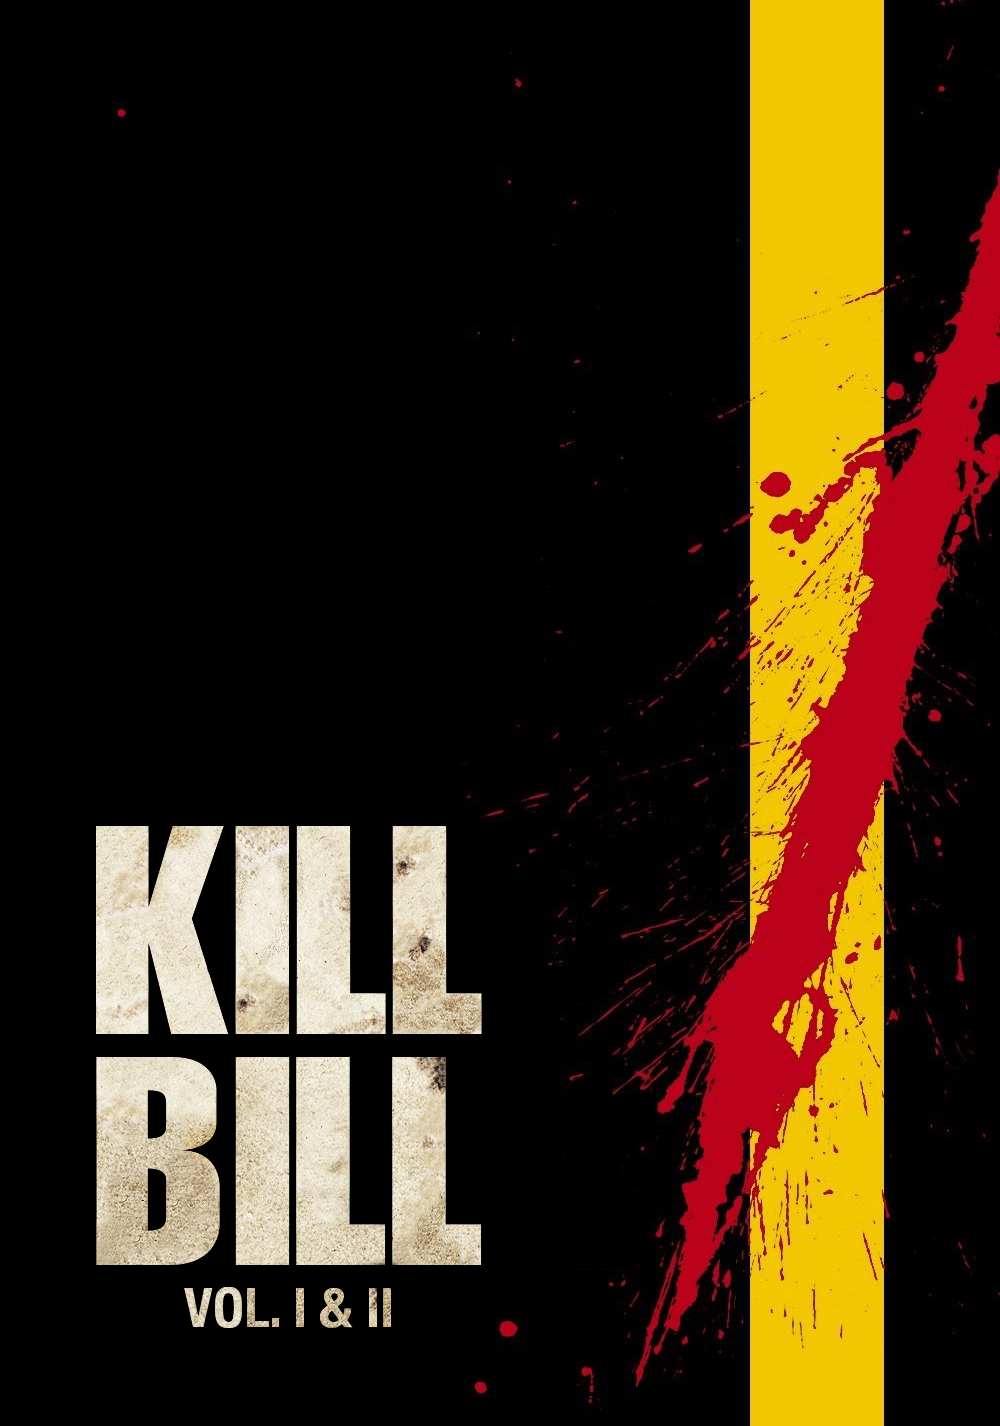 Kill Bill: Vol. 1 Art